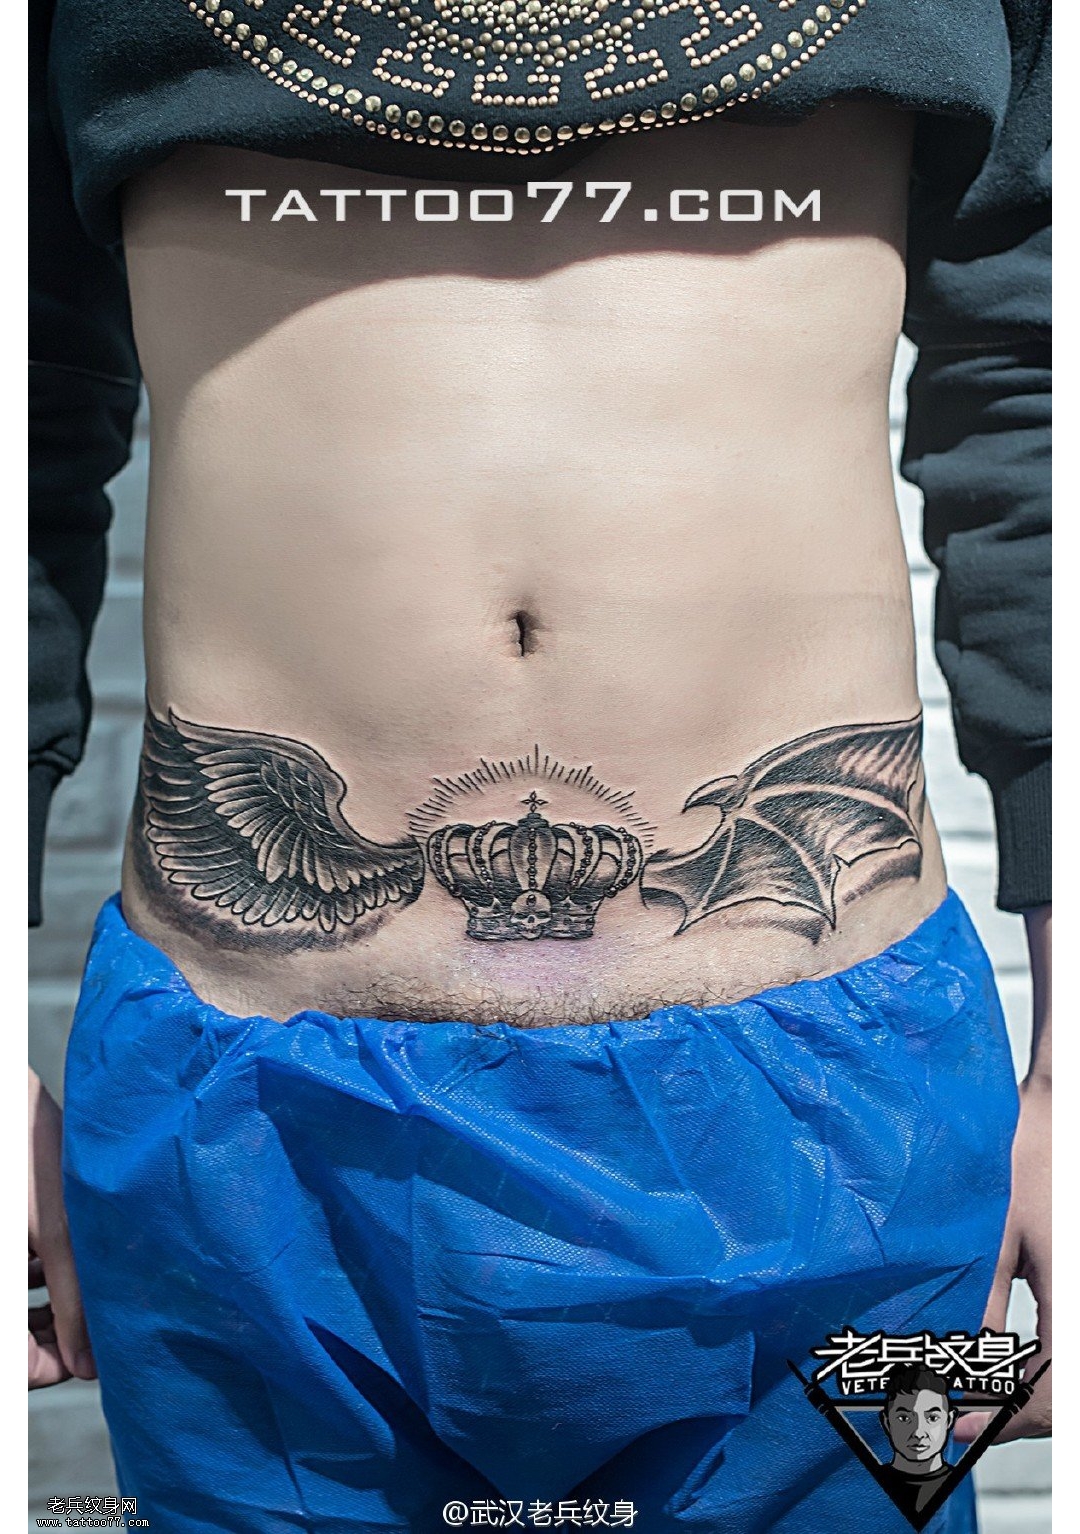 腹部皇冠天使恶魔翅膀纹身图案作品